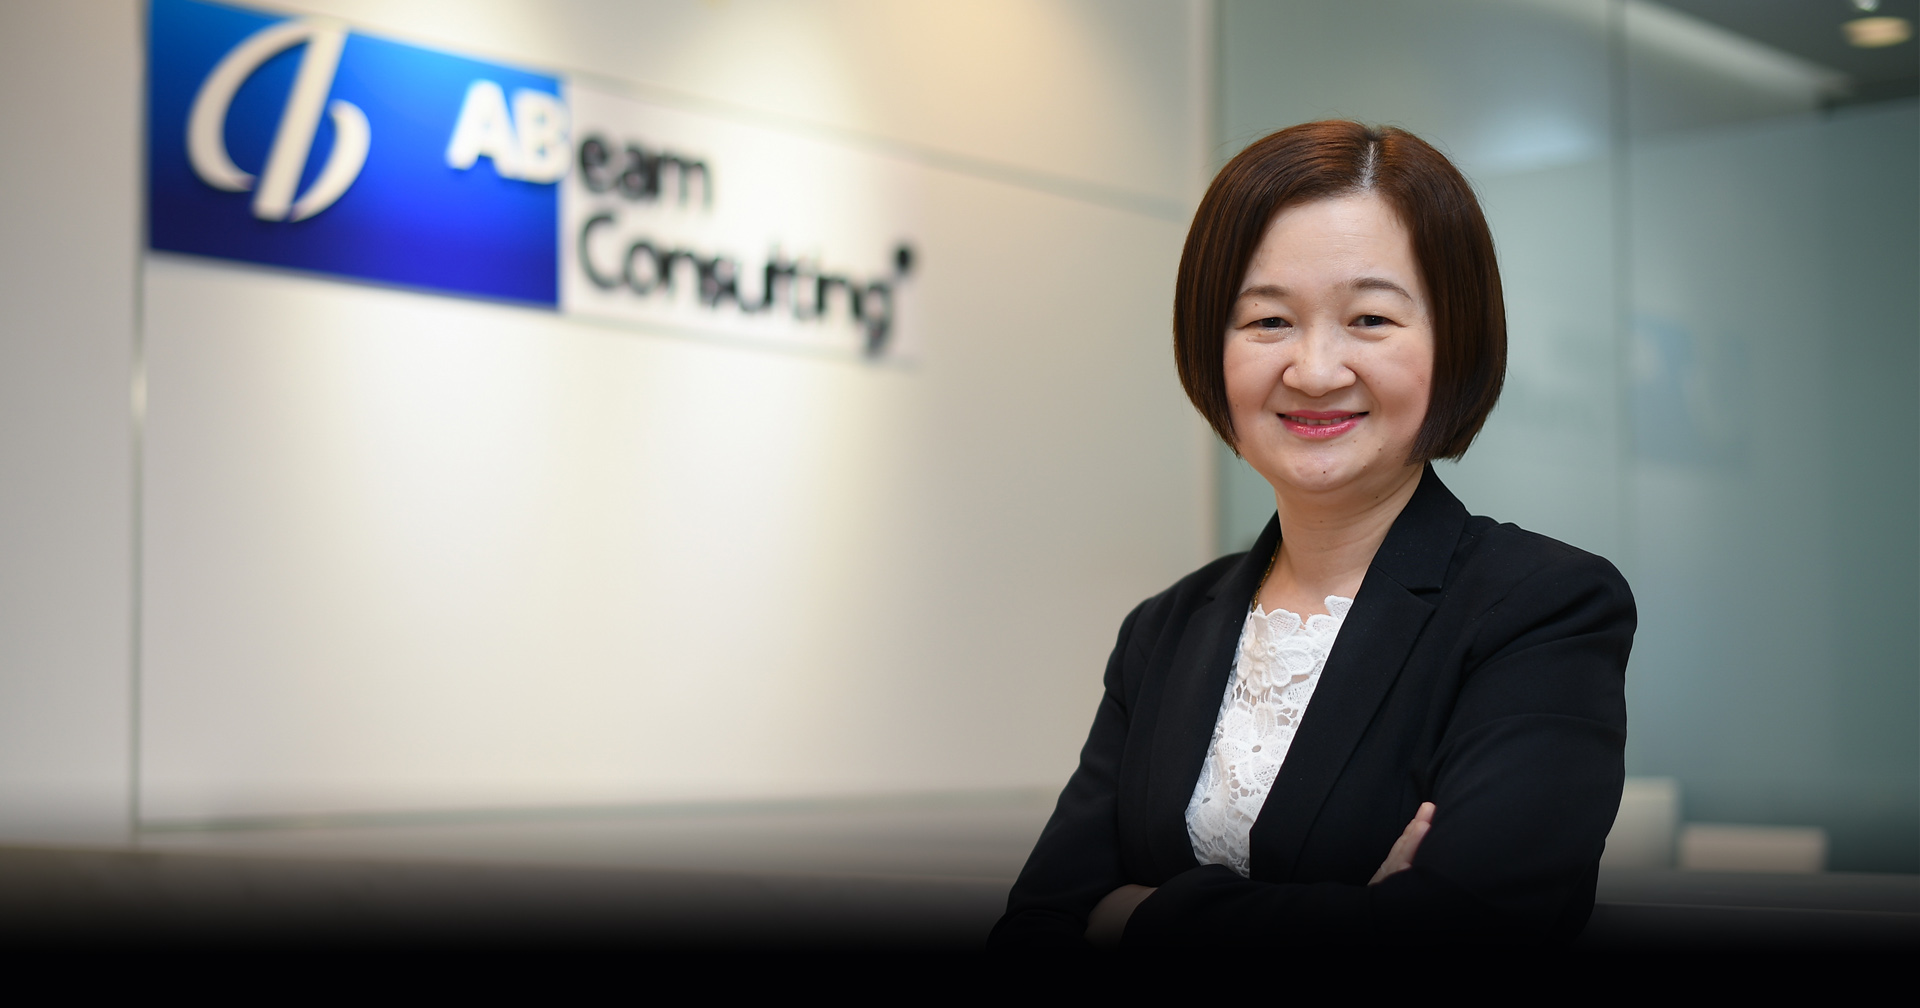 “เอบีม คอนซัลติ้ง”ตอกย้ำการเป็นผู้นำด้านดิจิทัลทรานส์ฟอร์เมชันได้รับการรับรอง SAP Certificate ในไทย 4 ปีซ้อน